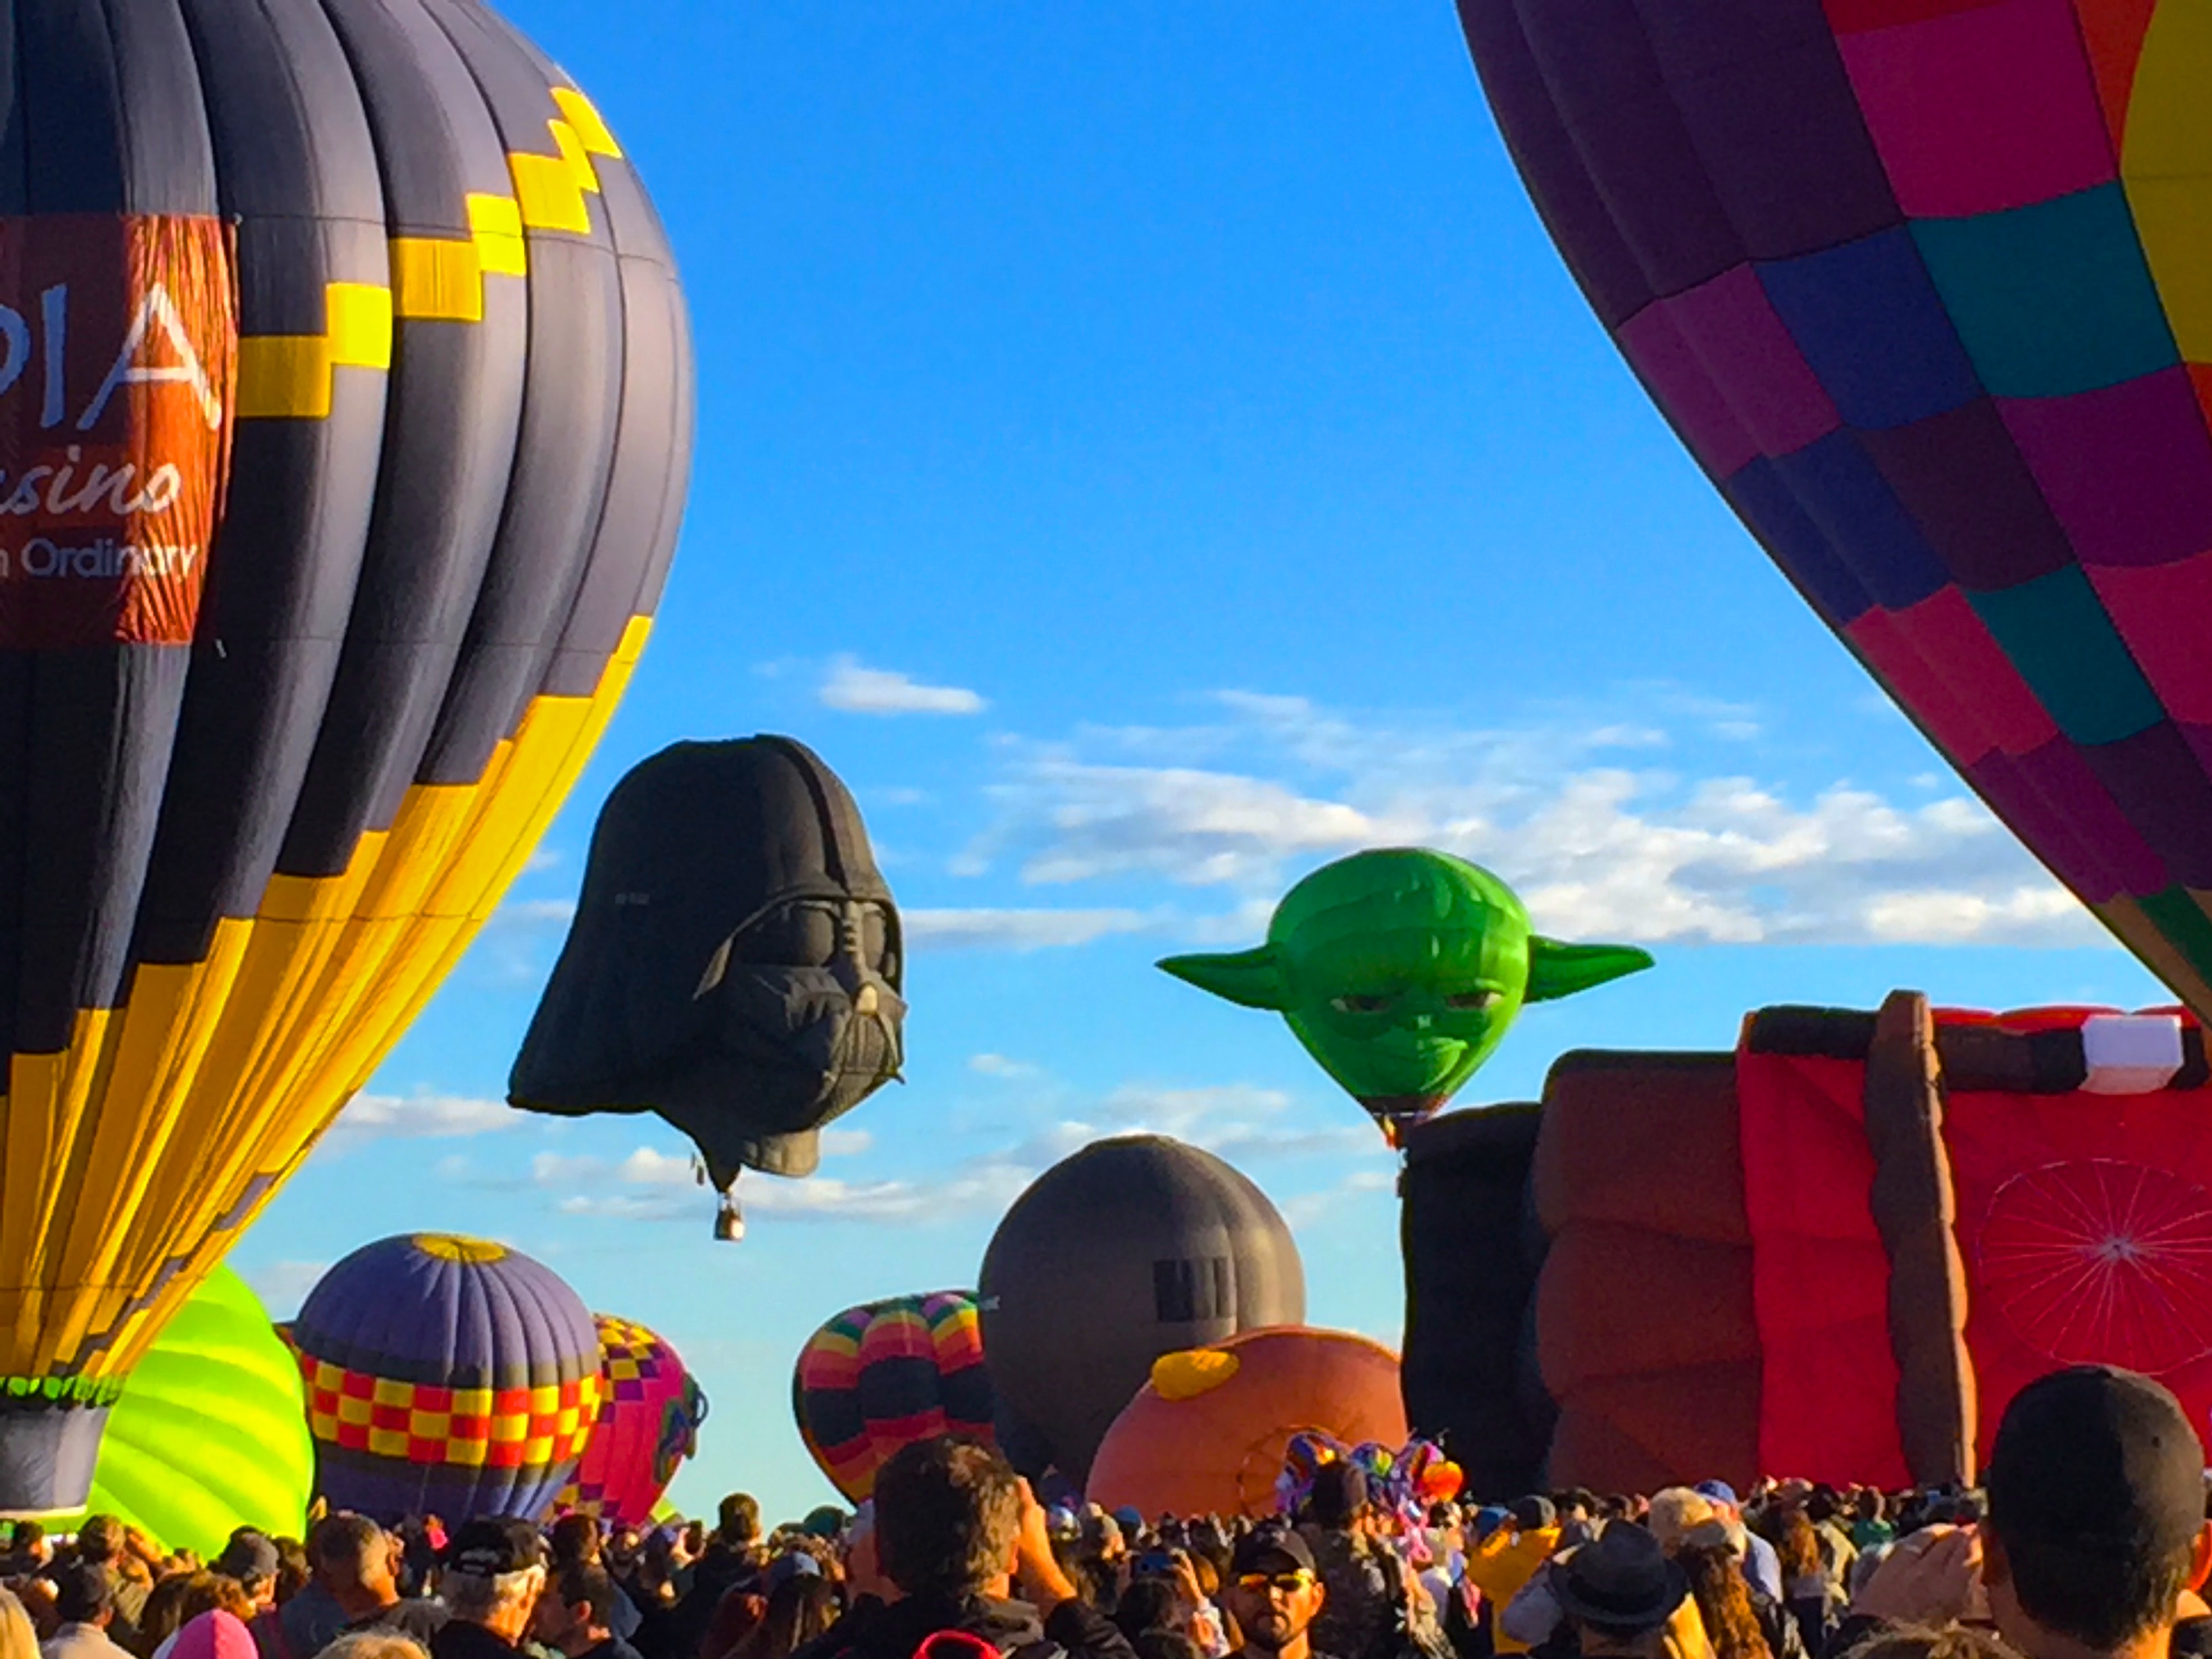 Balloon Fiesta in Albuquerque